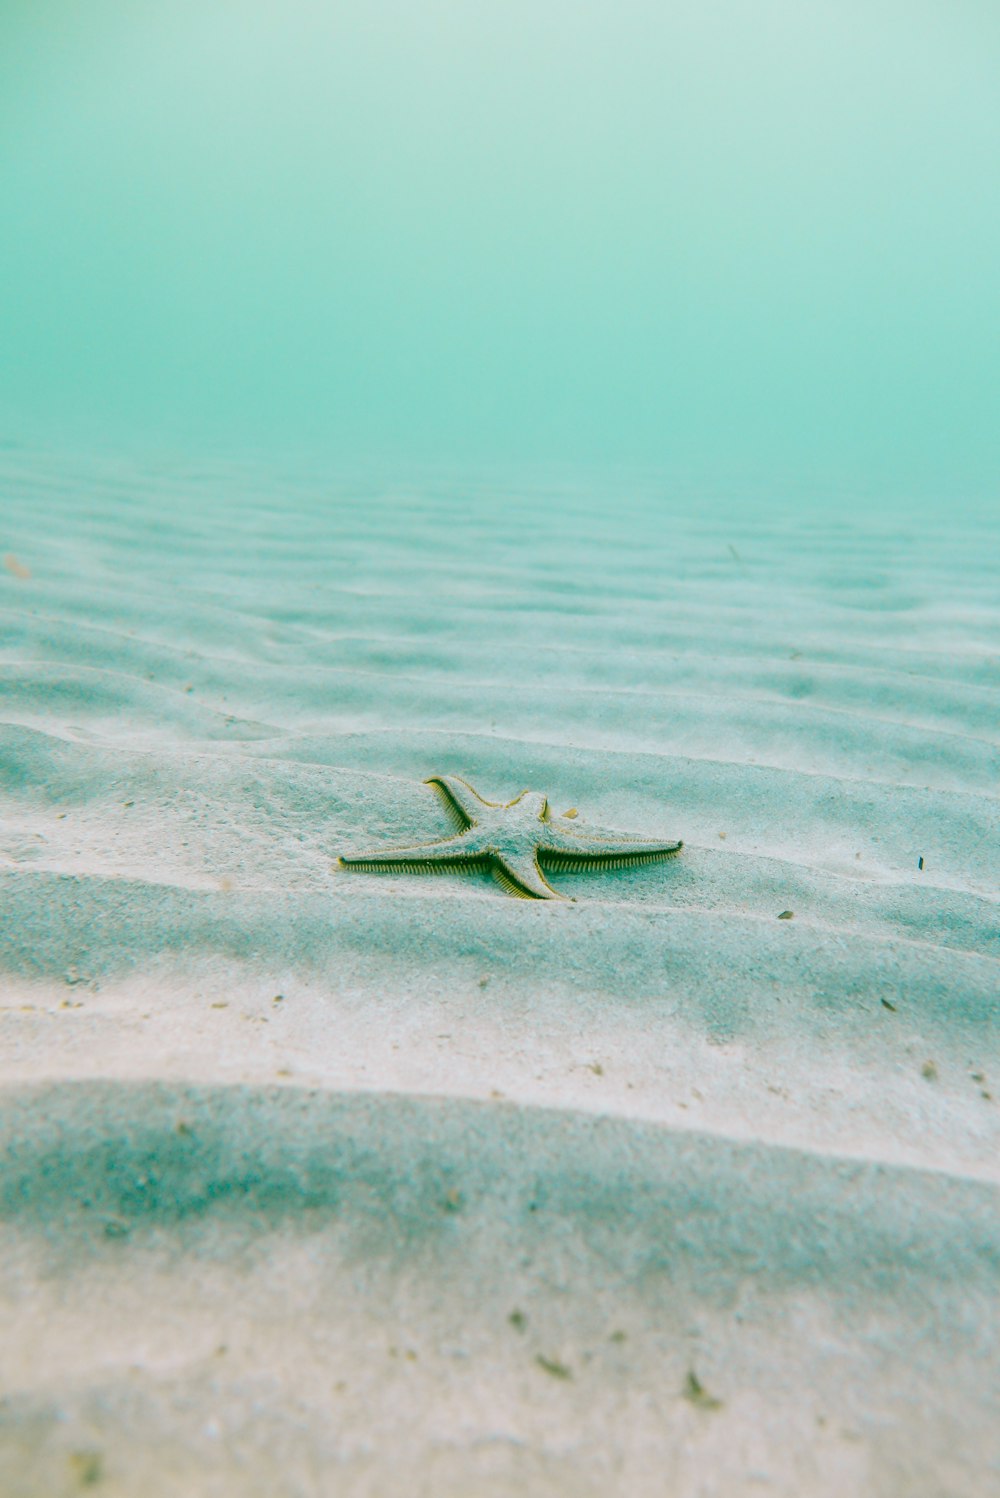 stella marina bianca sulla sabbia sott'acqua durante il giorno